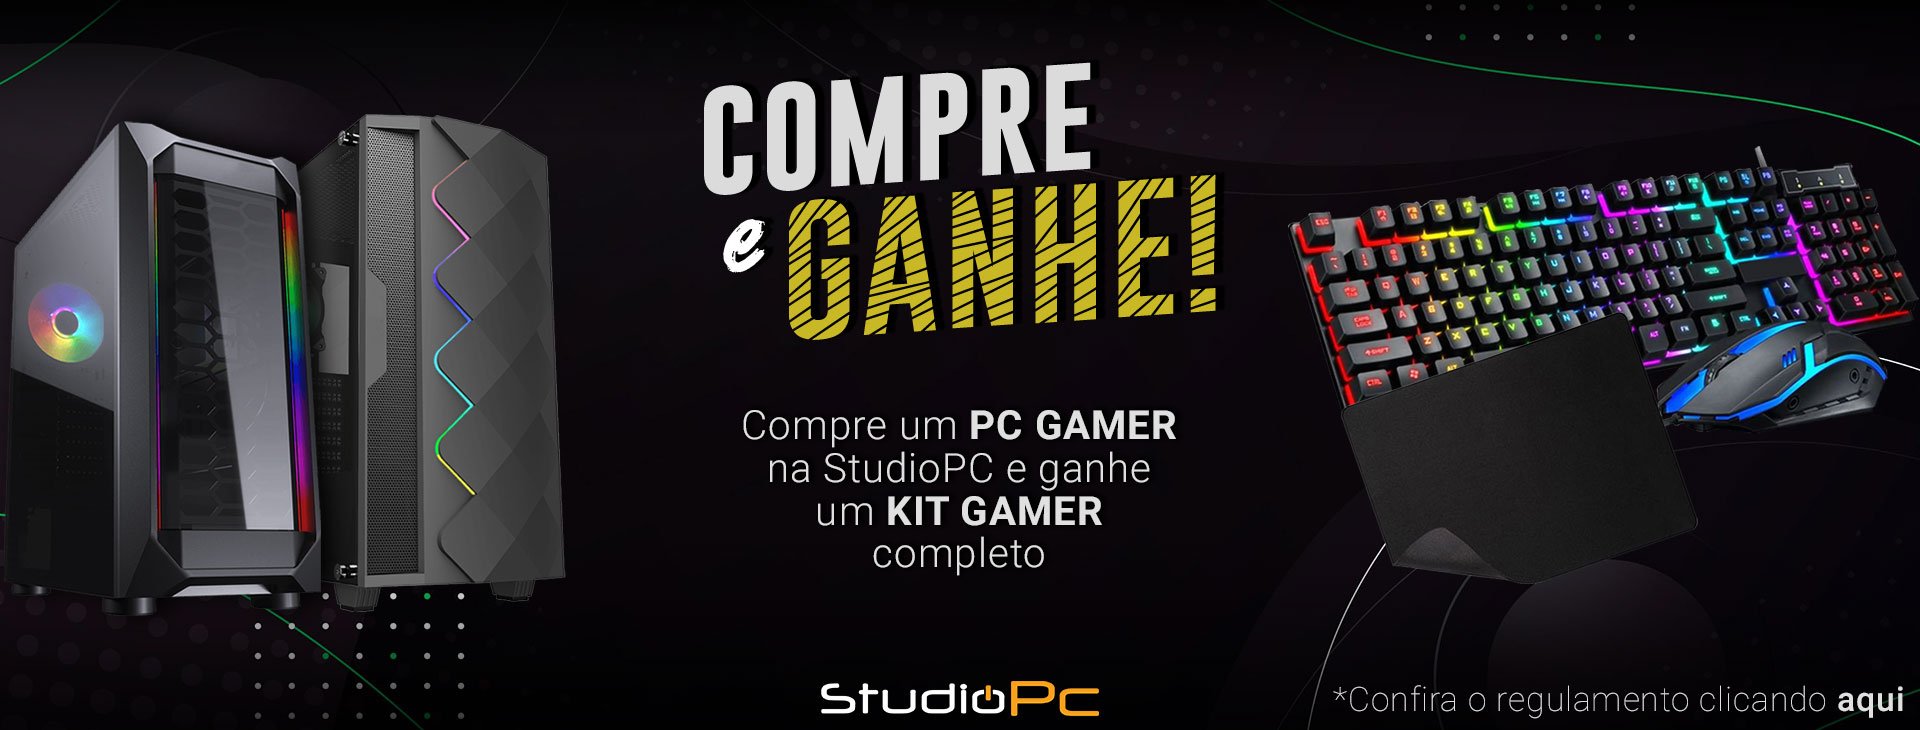 Studio Pc - Ainda não tem um Pc Gamer StudioPc!? Então